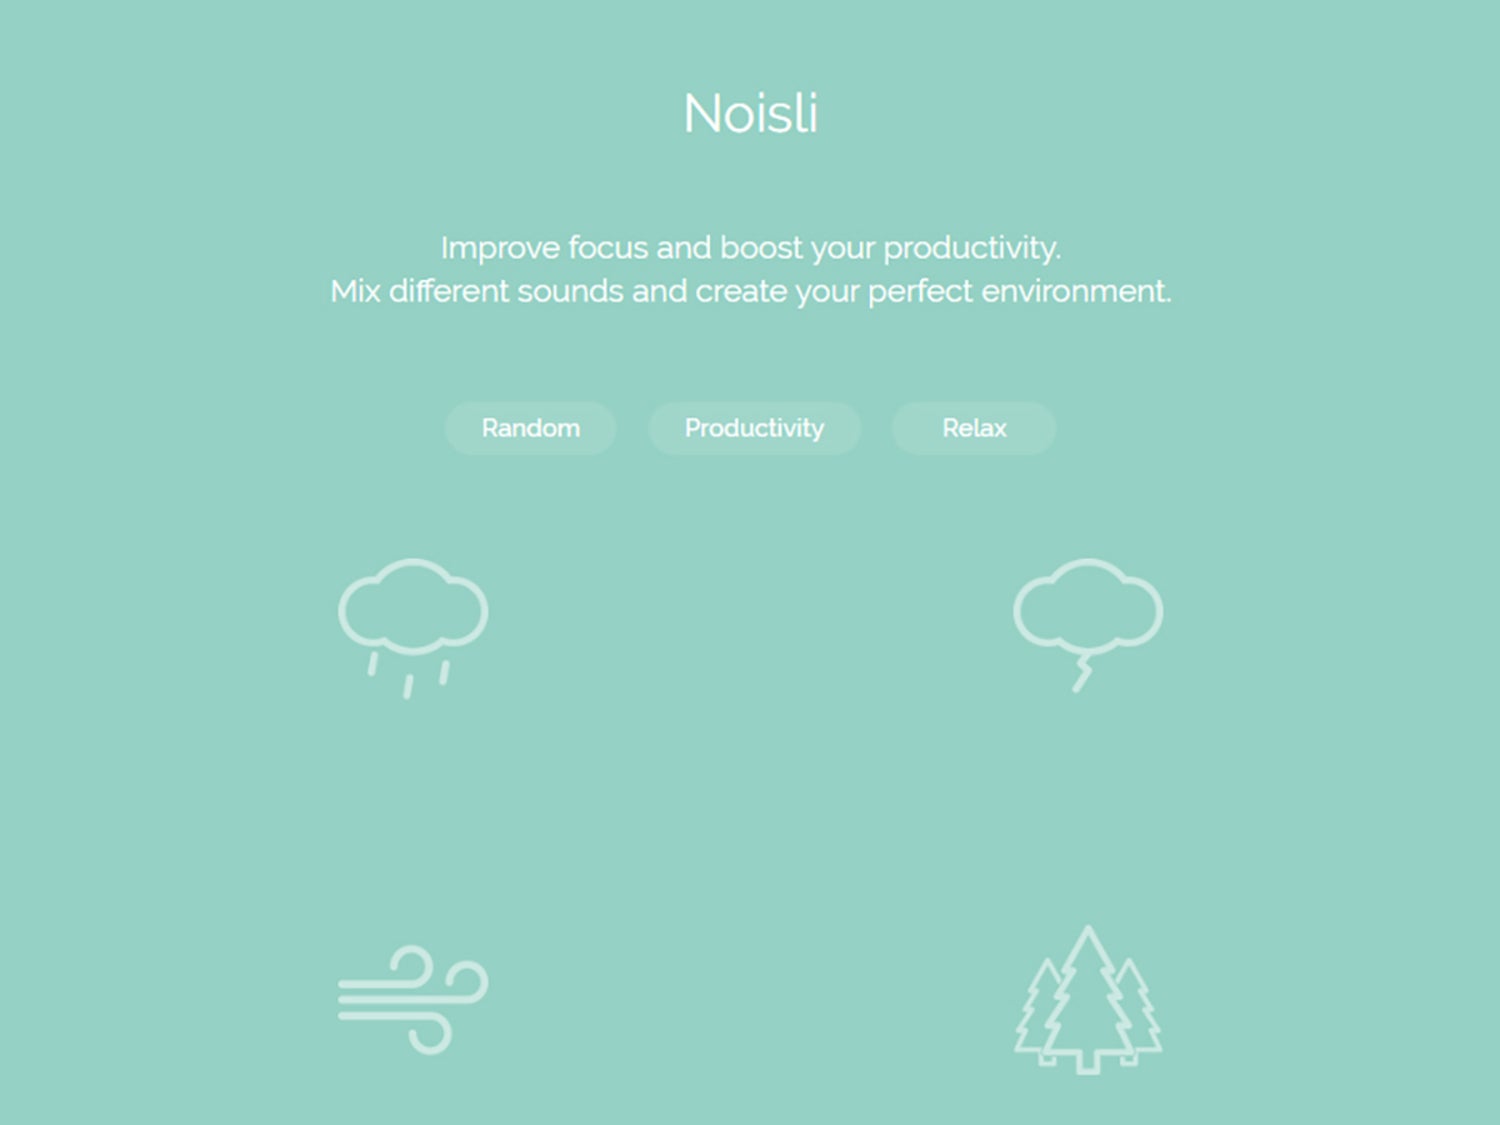 The Noislii app interface.